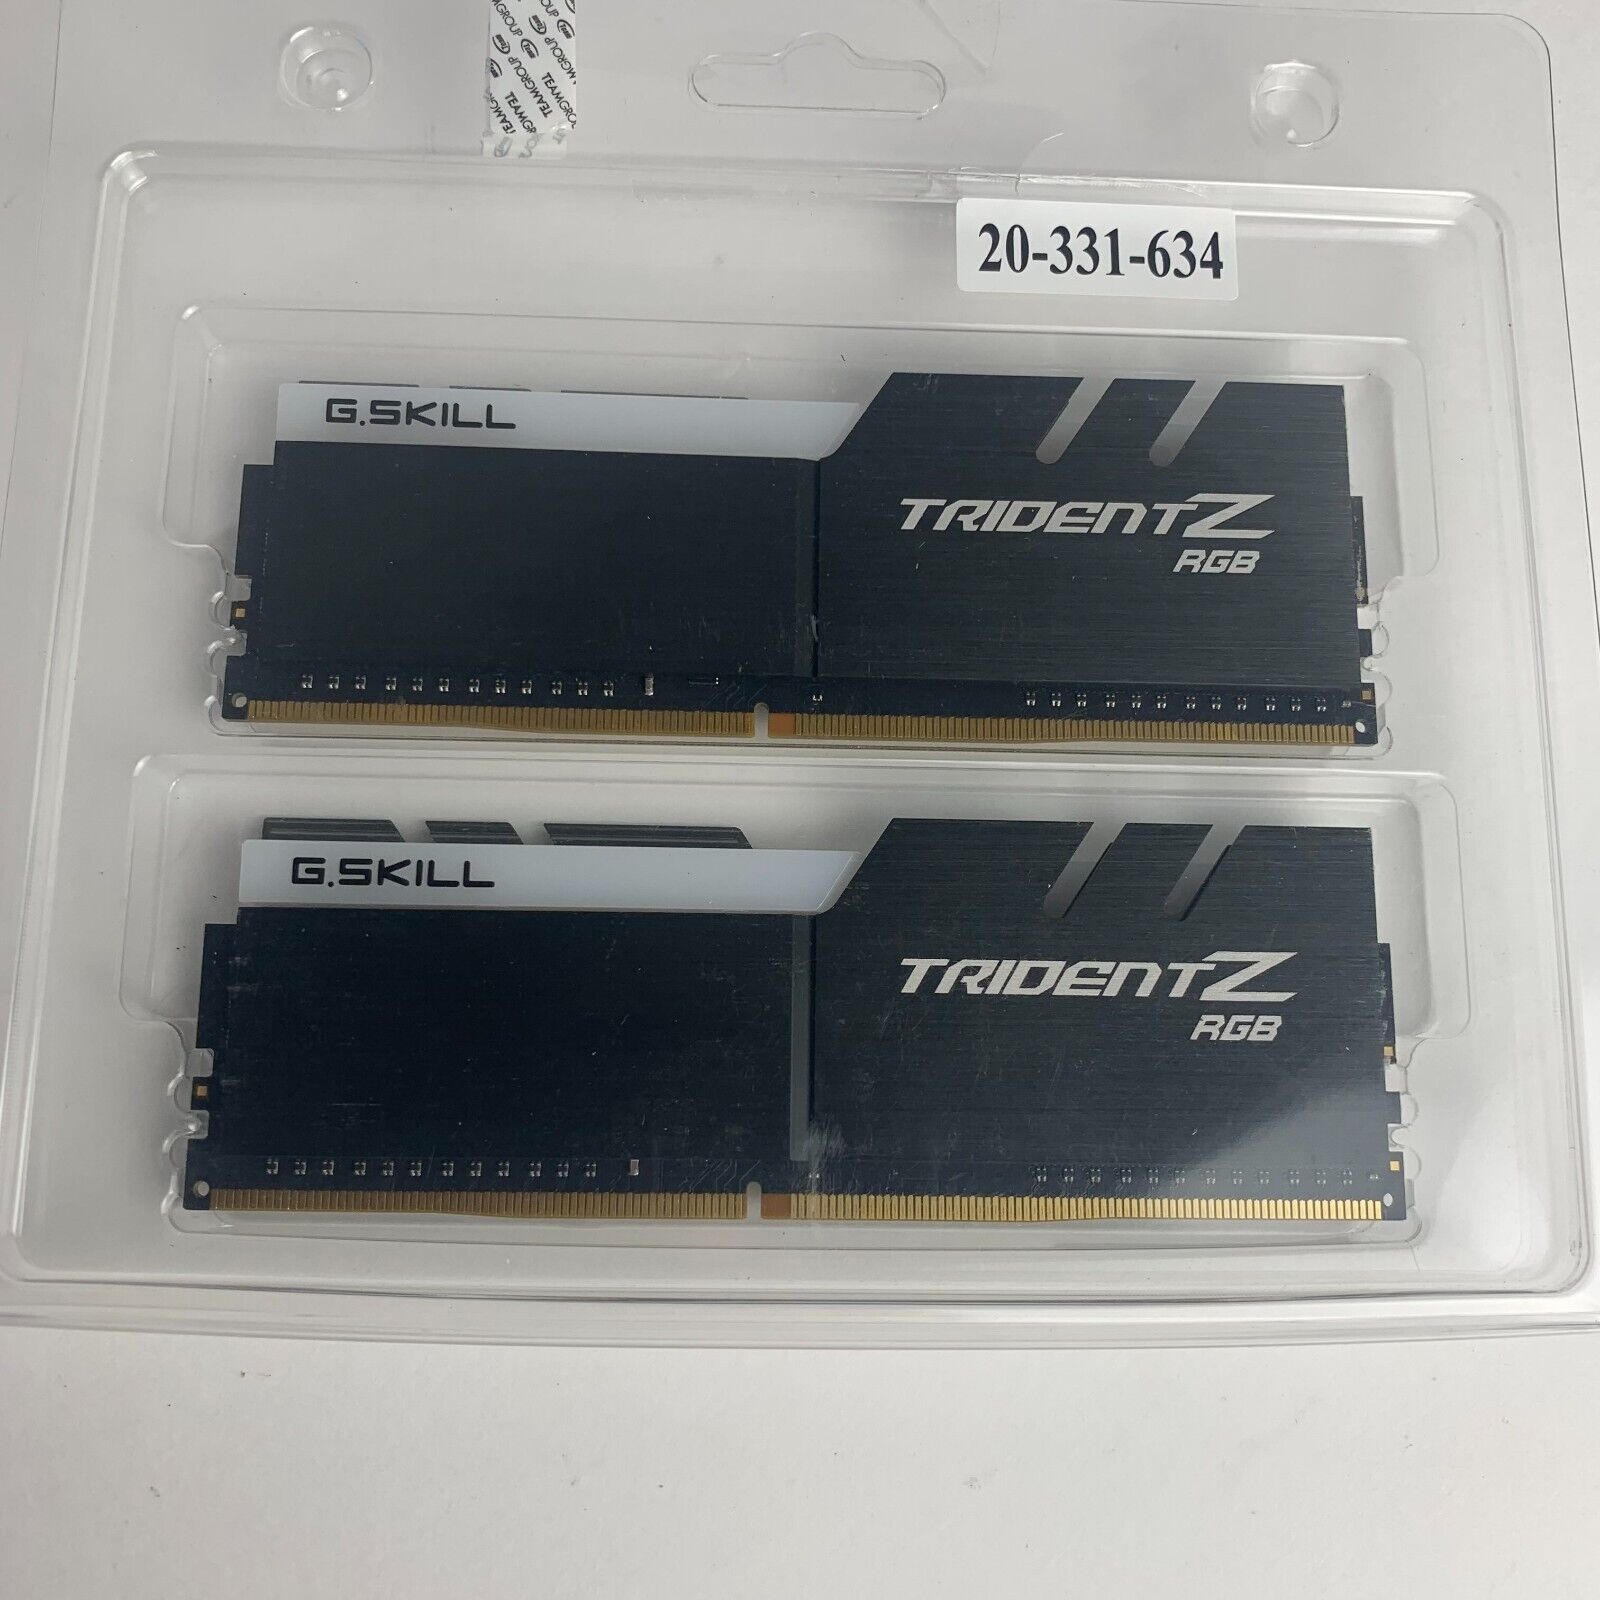 G.SKILL Trident Z RGB 32GB (2 x 16GB) DDR4 3600 PC4-28800 CL16-18 288-Pin PC RAM